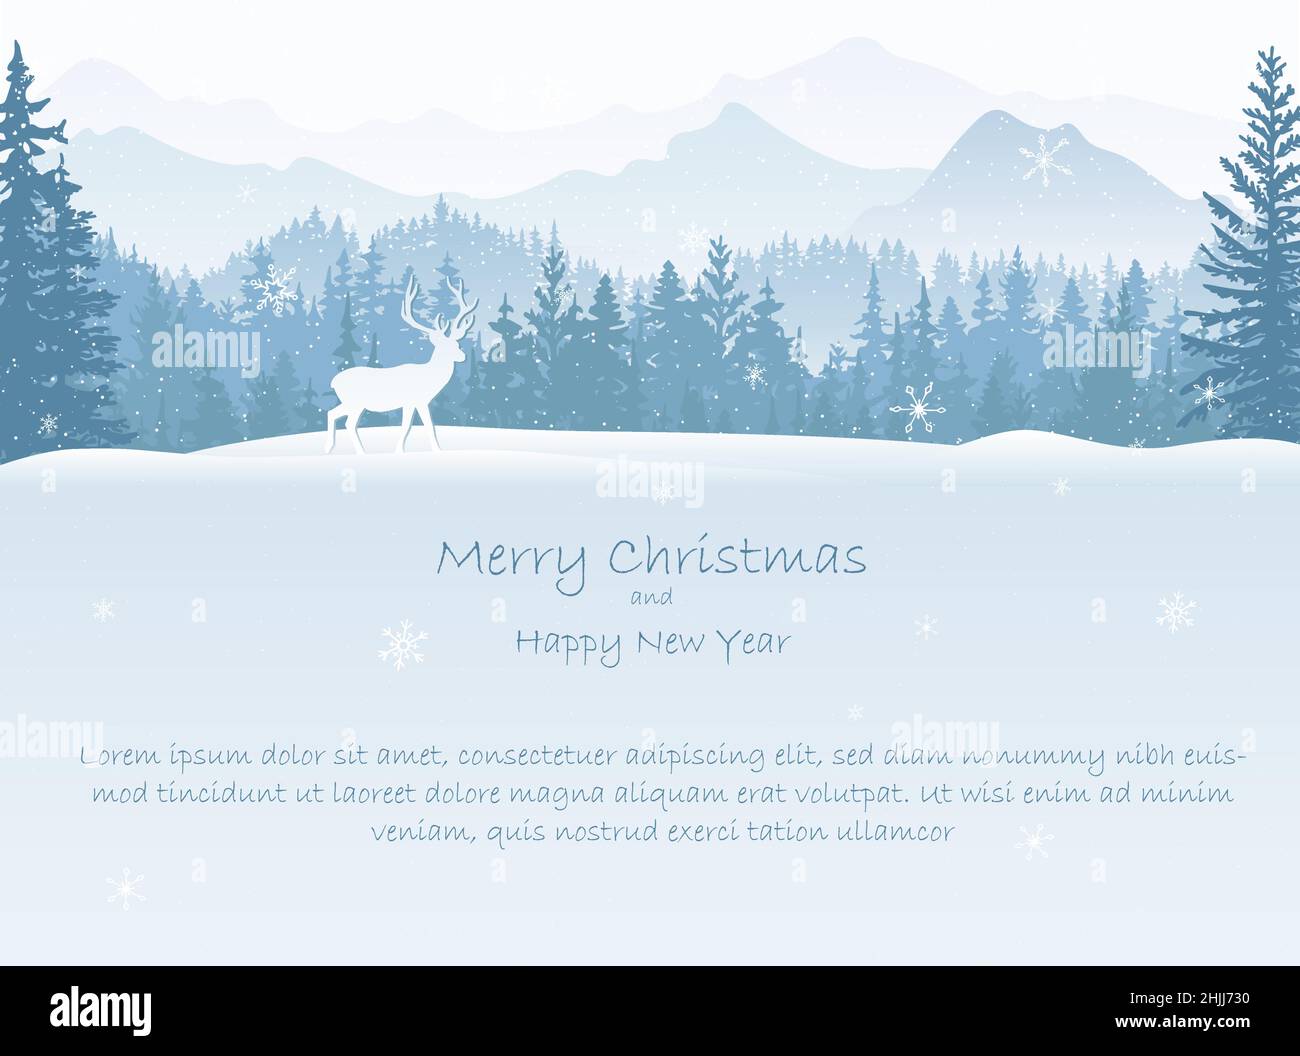 Weihnachtskarte mit Winterlandschaft. Hirsche im Schnee, Wälder und Berge im Hintergrund. Magische neblige Natur, wilde Tiere. Frohe Weihnachten, Frohes neues Jahr. Stock Vektor